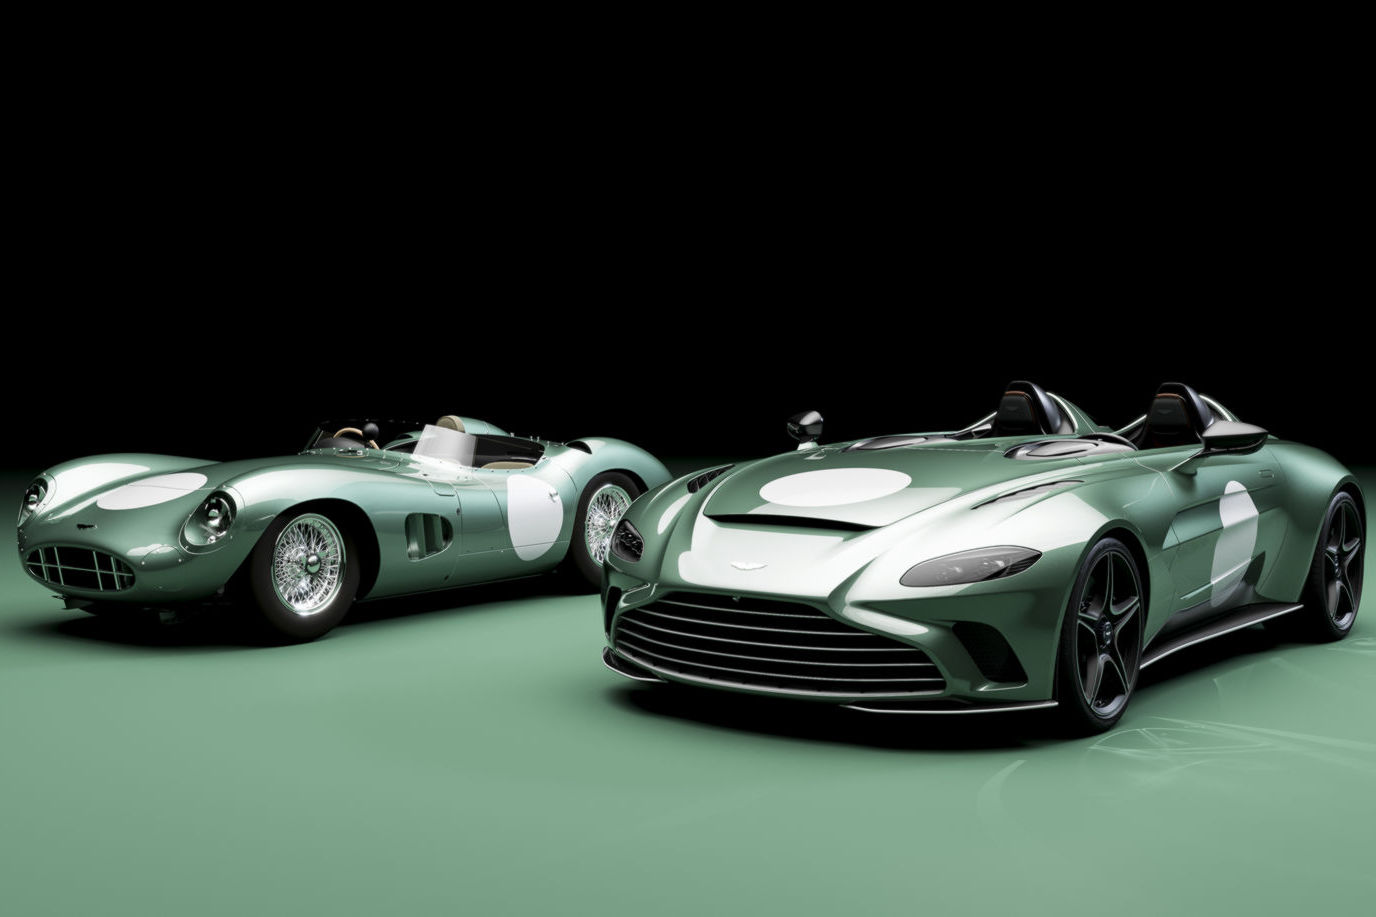 A legdrágább brit autóra hasonlít ez az Aston Martin 7